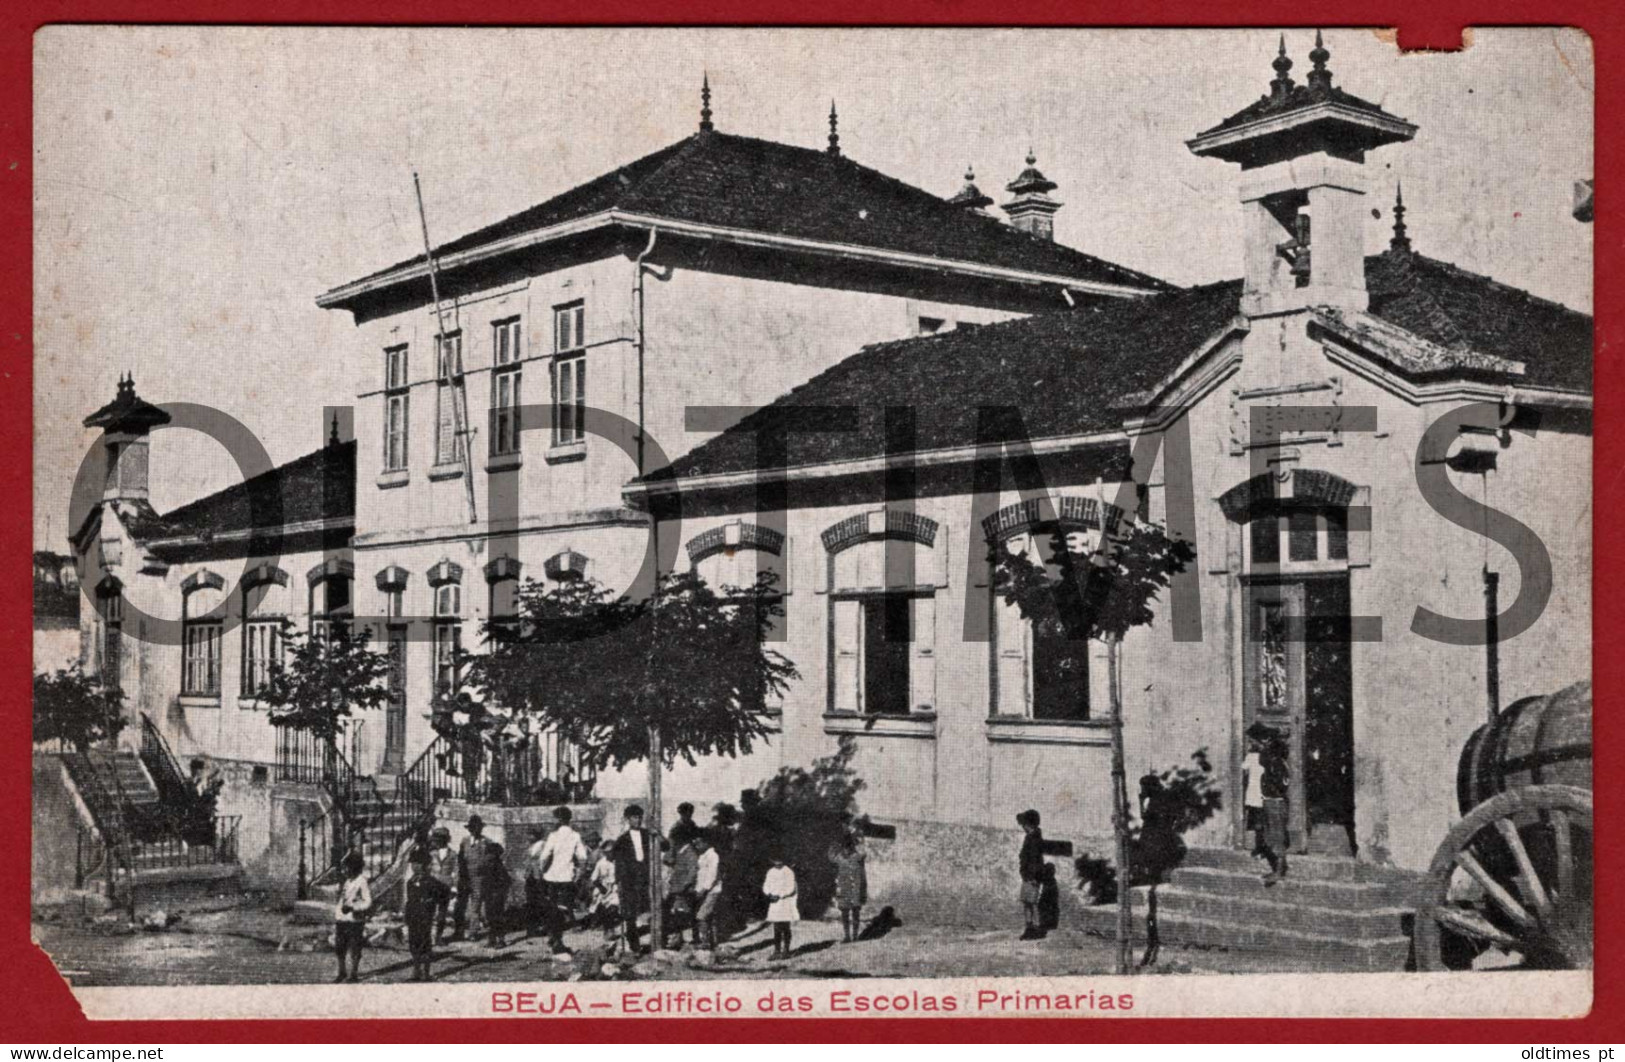 PORTUGAL - BEJA - EDIFICIO DAS ESCOLAS PRIMÁRIAS - 1920 PC - Beja